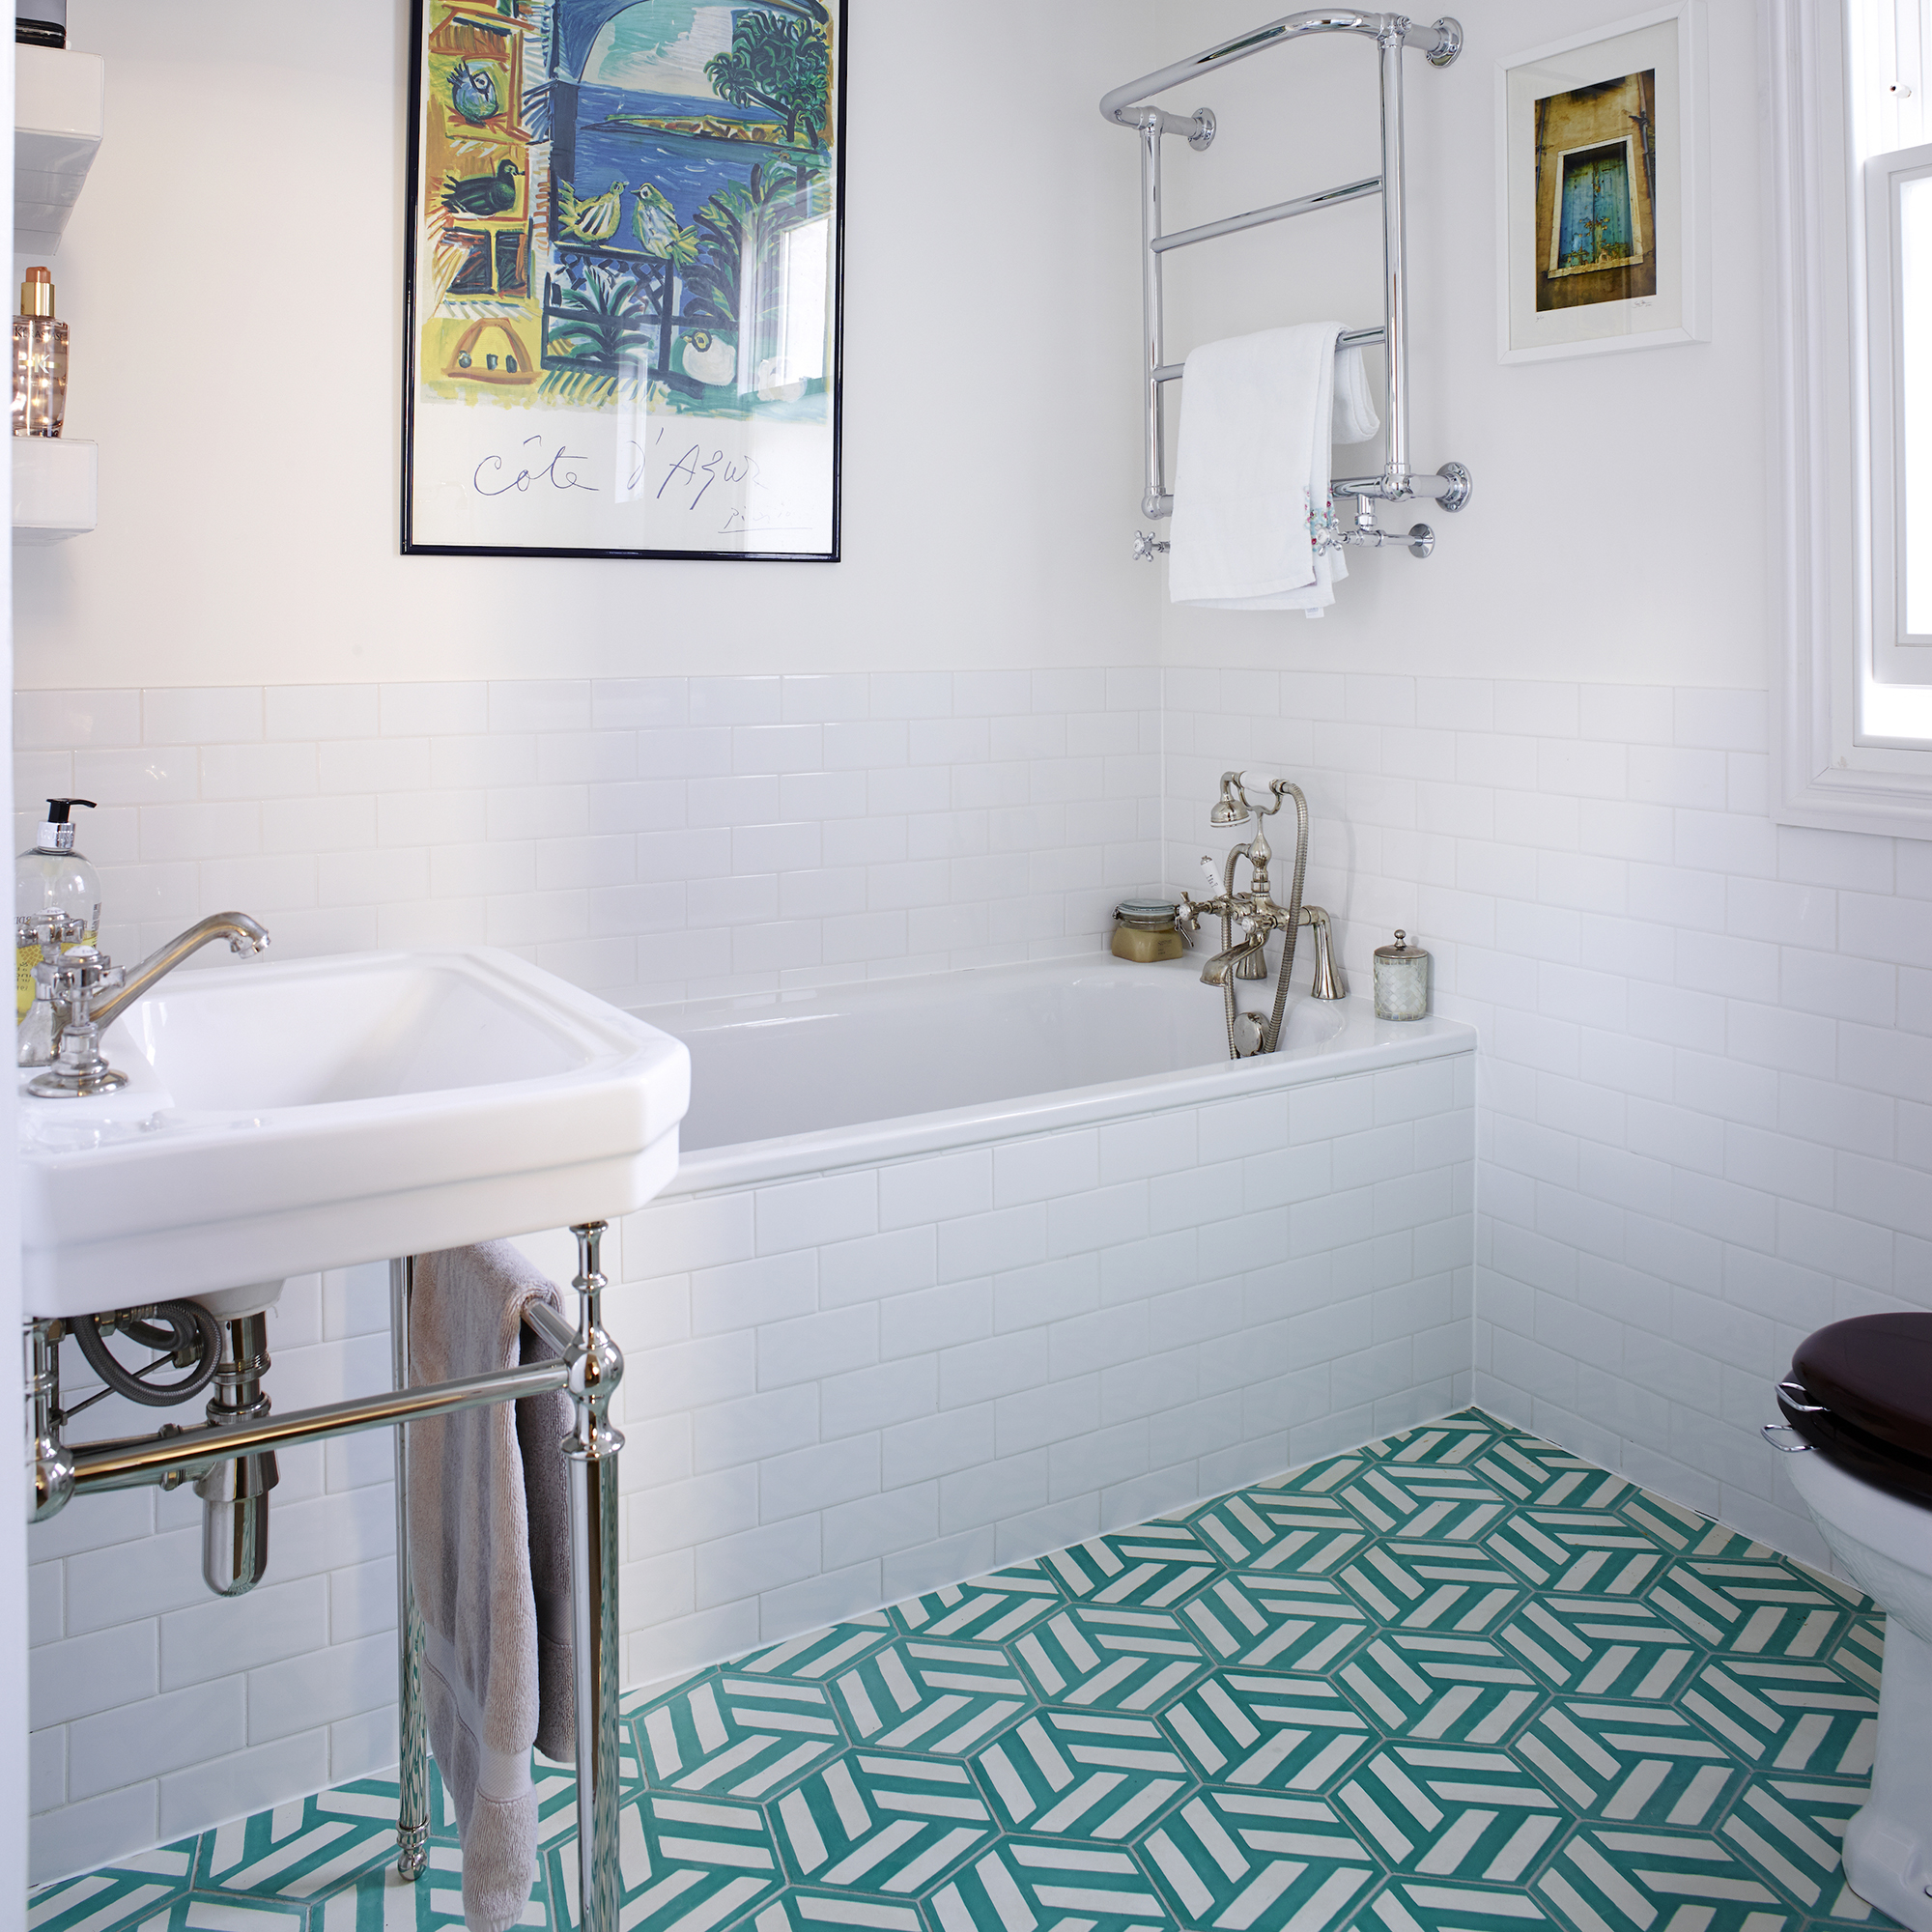 Baño blanco con azulejos geométricos verdes en el suelo y azulejos blancos en la pared y en el borde de la bañera